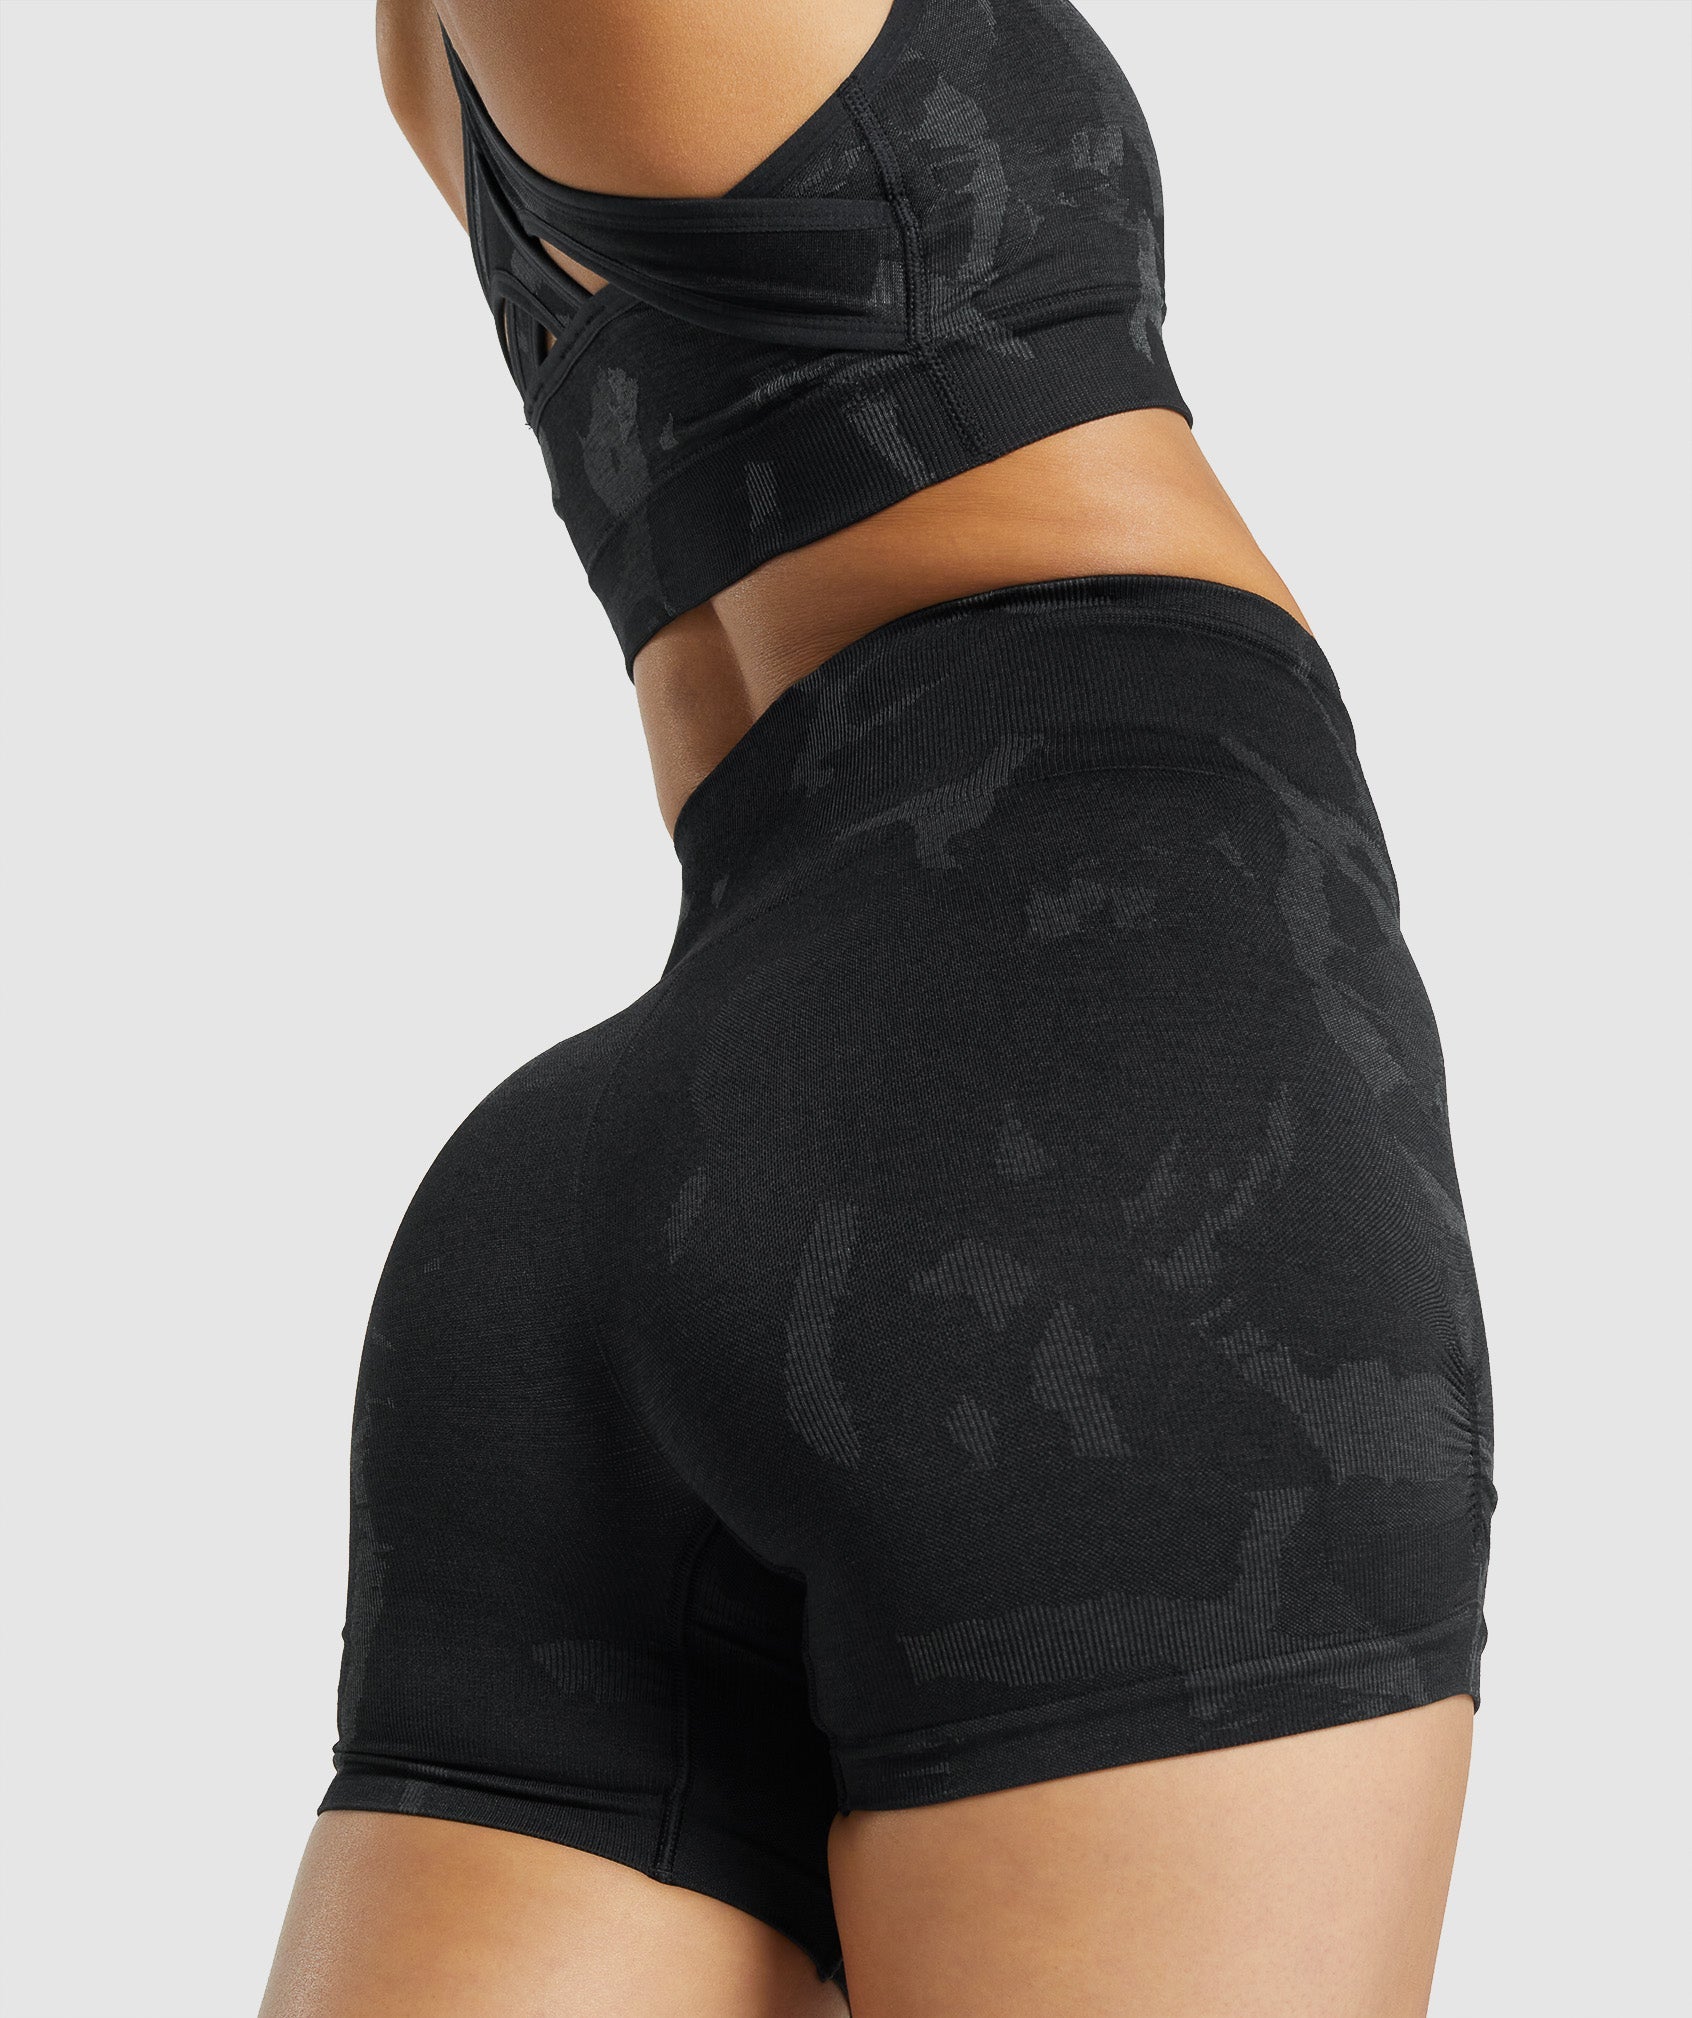 New Gymshark Adapt Camo Seamless Shorts Black Size XLarge